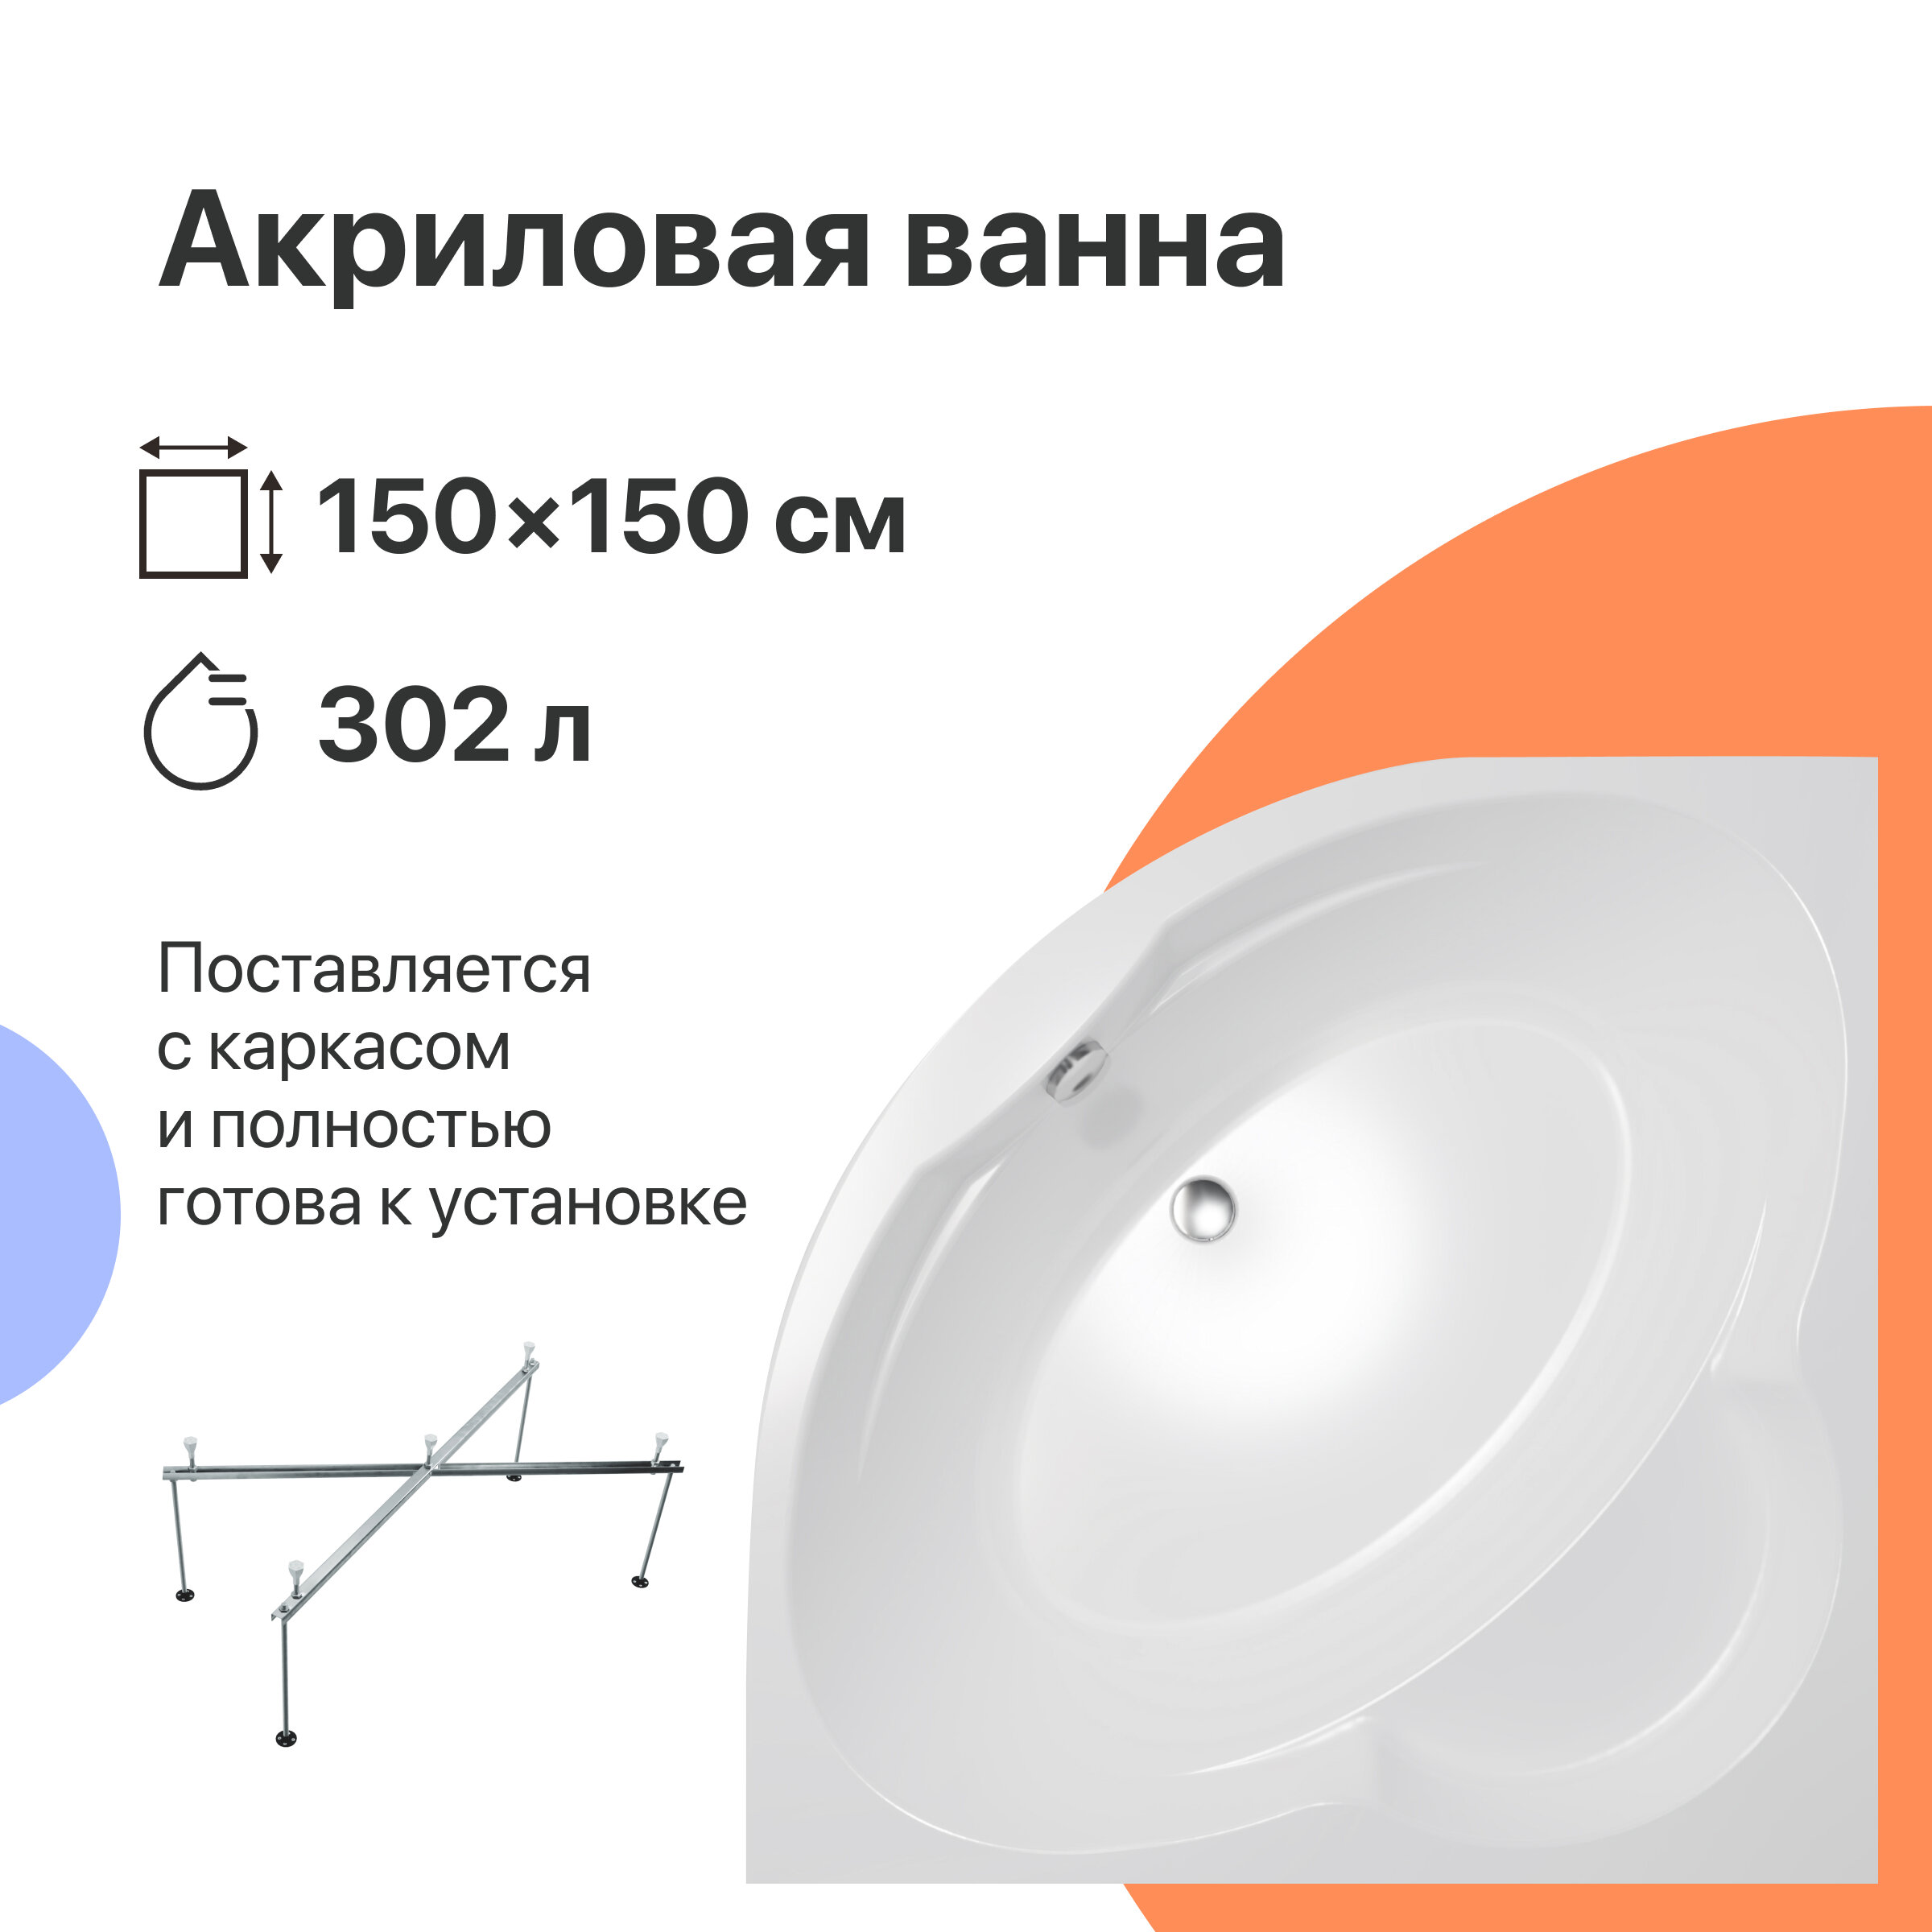 Акриловая ванна DIWO Архангельск 150x150 с каркасом